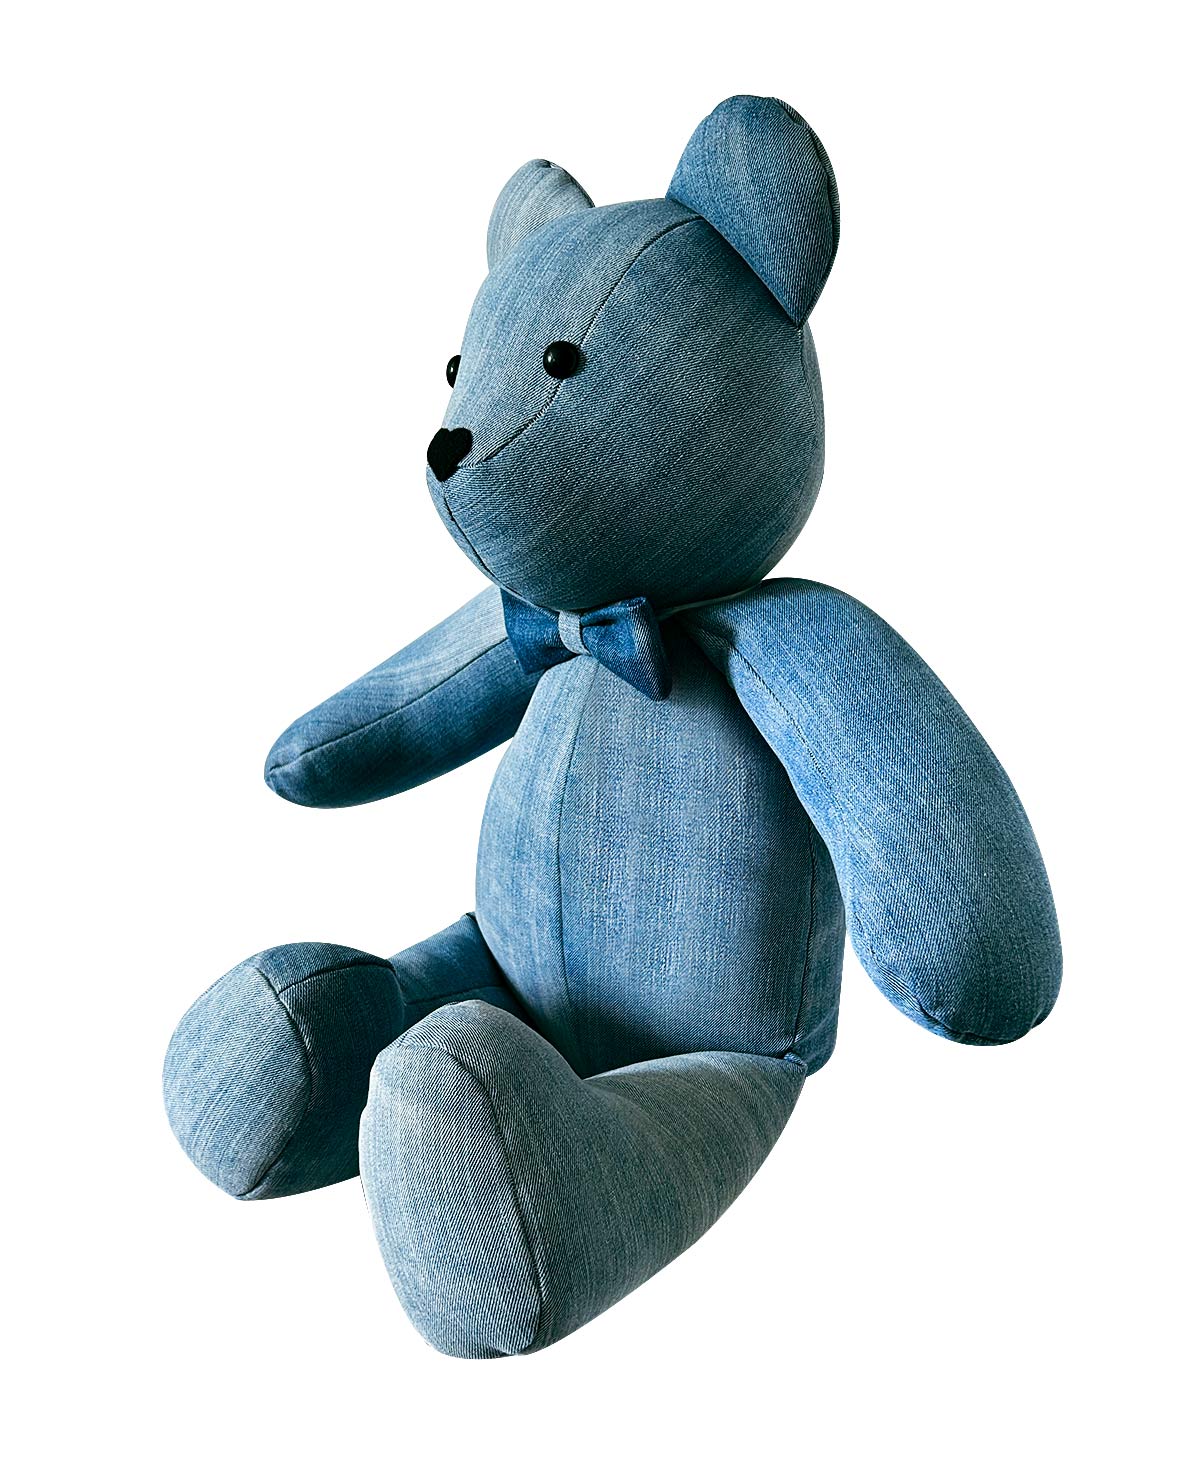 NOLAN The Teddy Bear - Autism Awareness Day